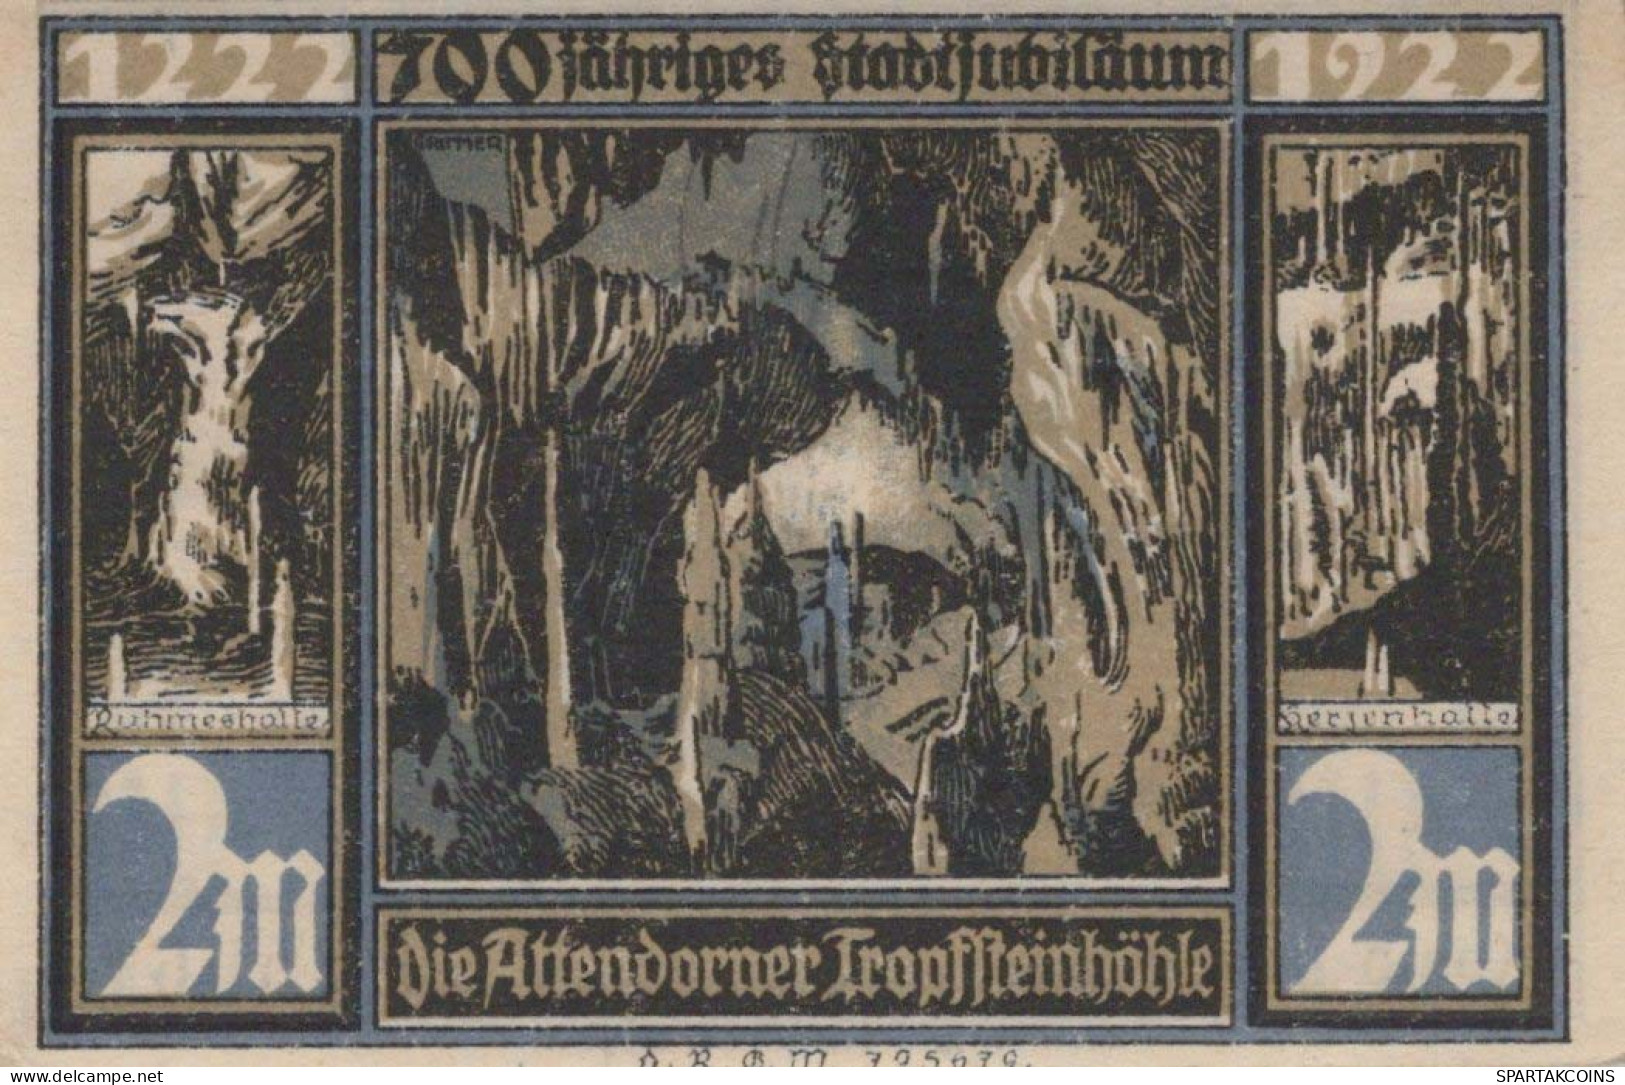 2 MARK 1922 Stadt ATTENDORN Westphalia UNC DEUTSCHLAND Notgeld Banknote #PC718 - [11] Local Banknote Issues